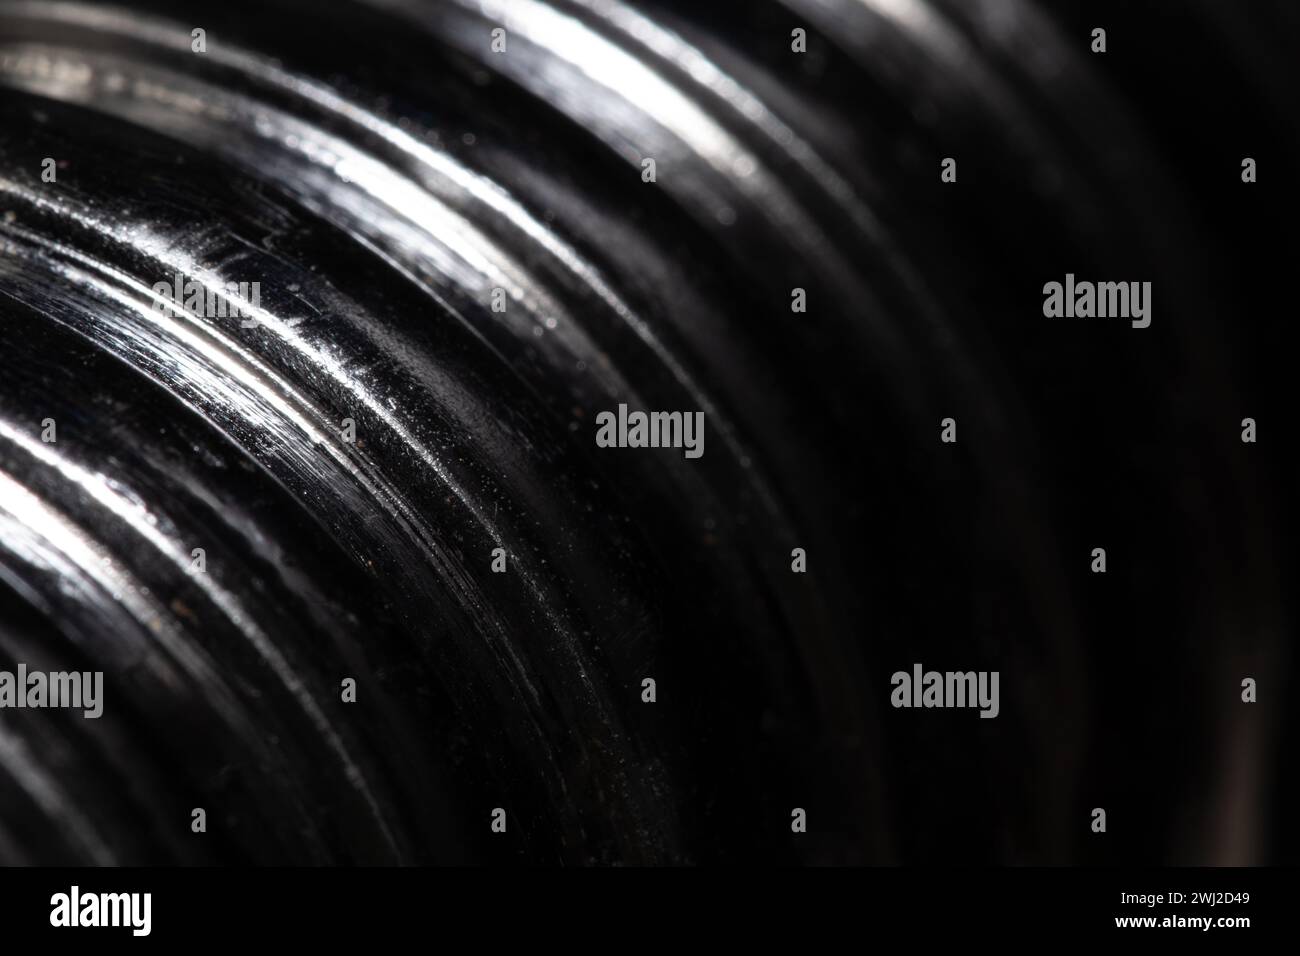 Primo piano della filettatura di una vite metallica su sfondo nero, metallo testurizzato, macro astratta Foto Stock